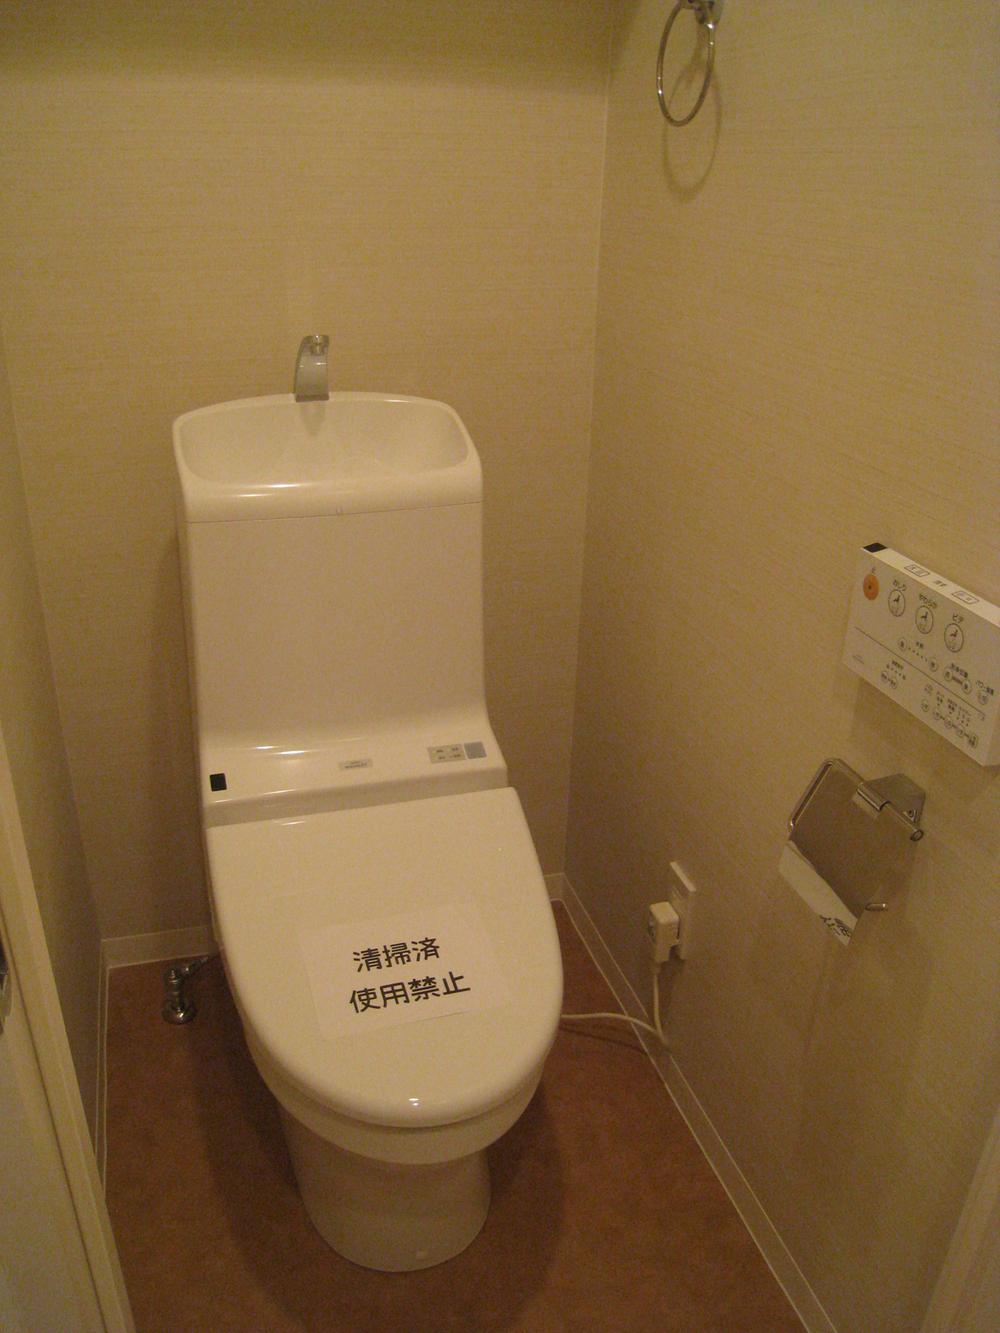 Toilet. Indoor (13 May 2013) Shooting